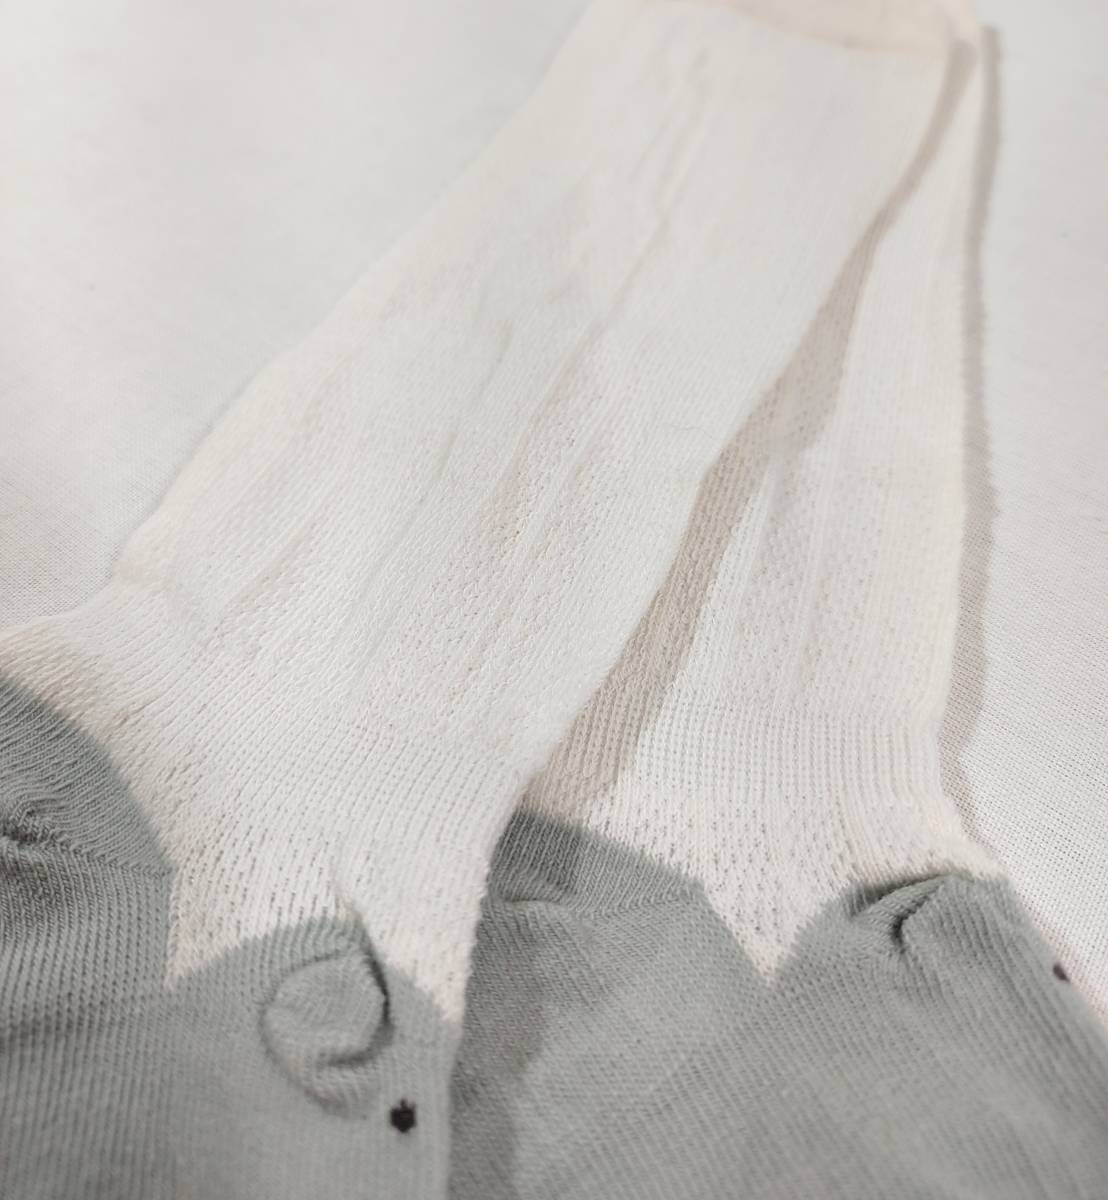 [1 иен лот ]HOOMCOOM baby носки хлопок 80% носки новорожденный 0~12 месяцы младенец носки ребенок носки 5 пар комплект 